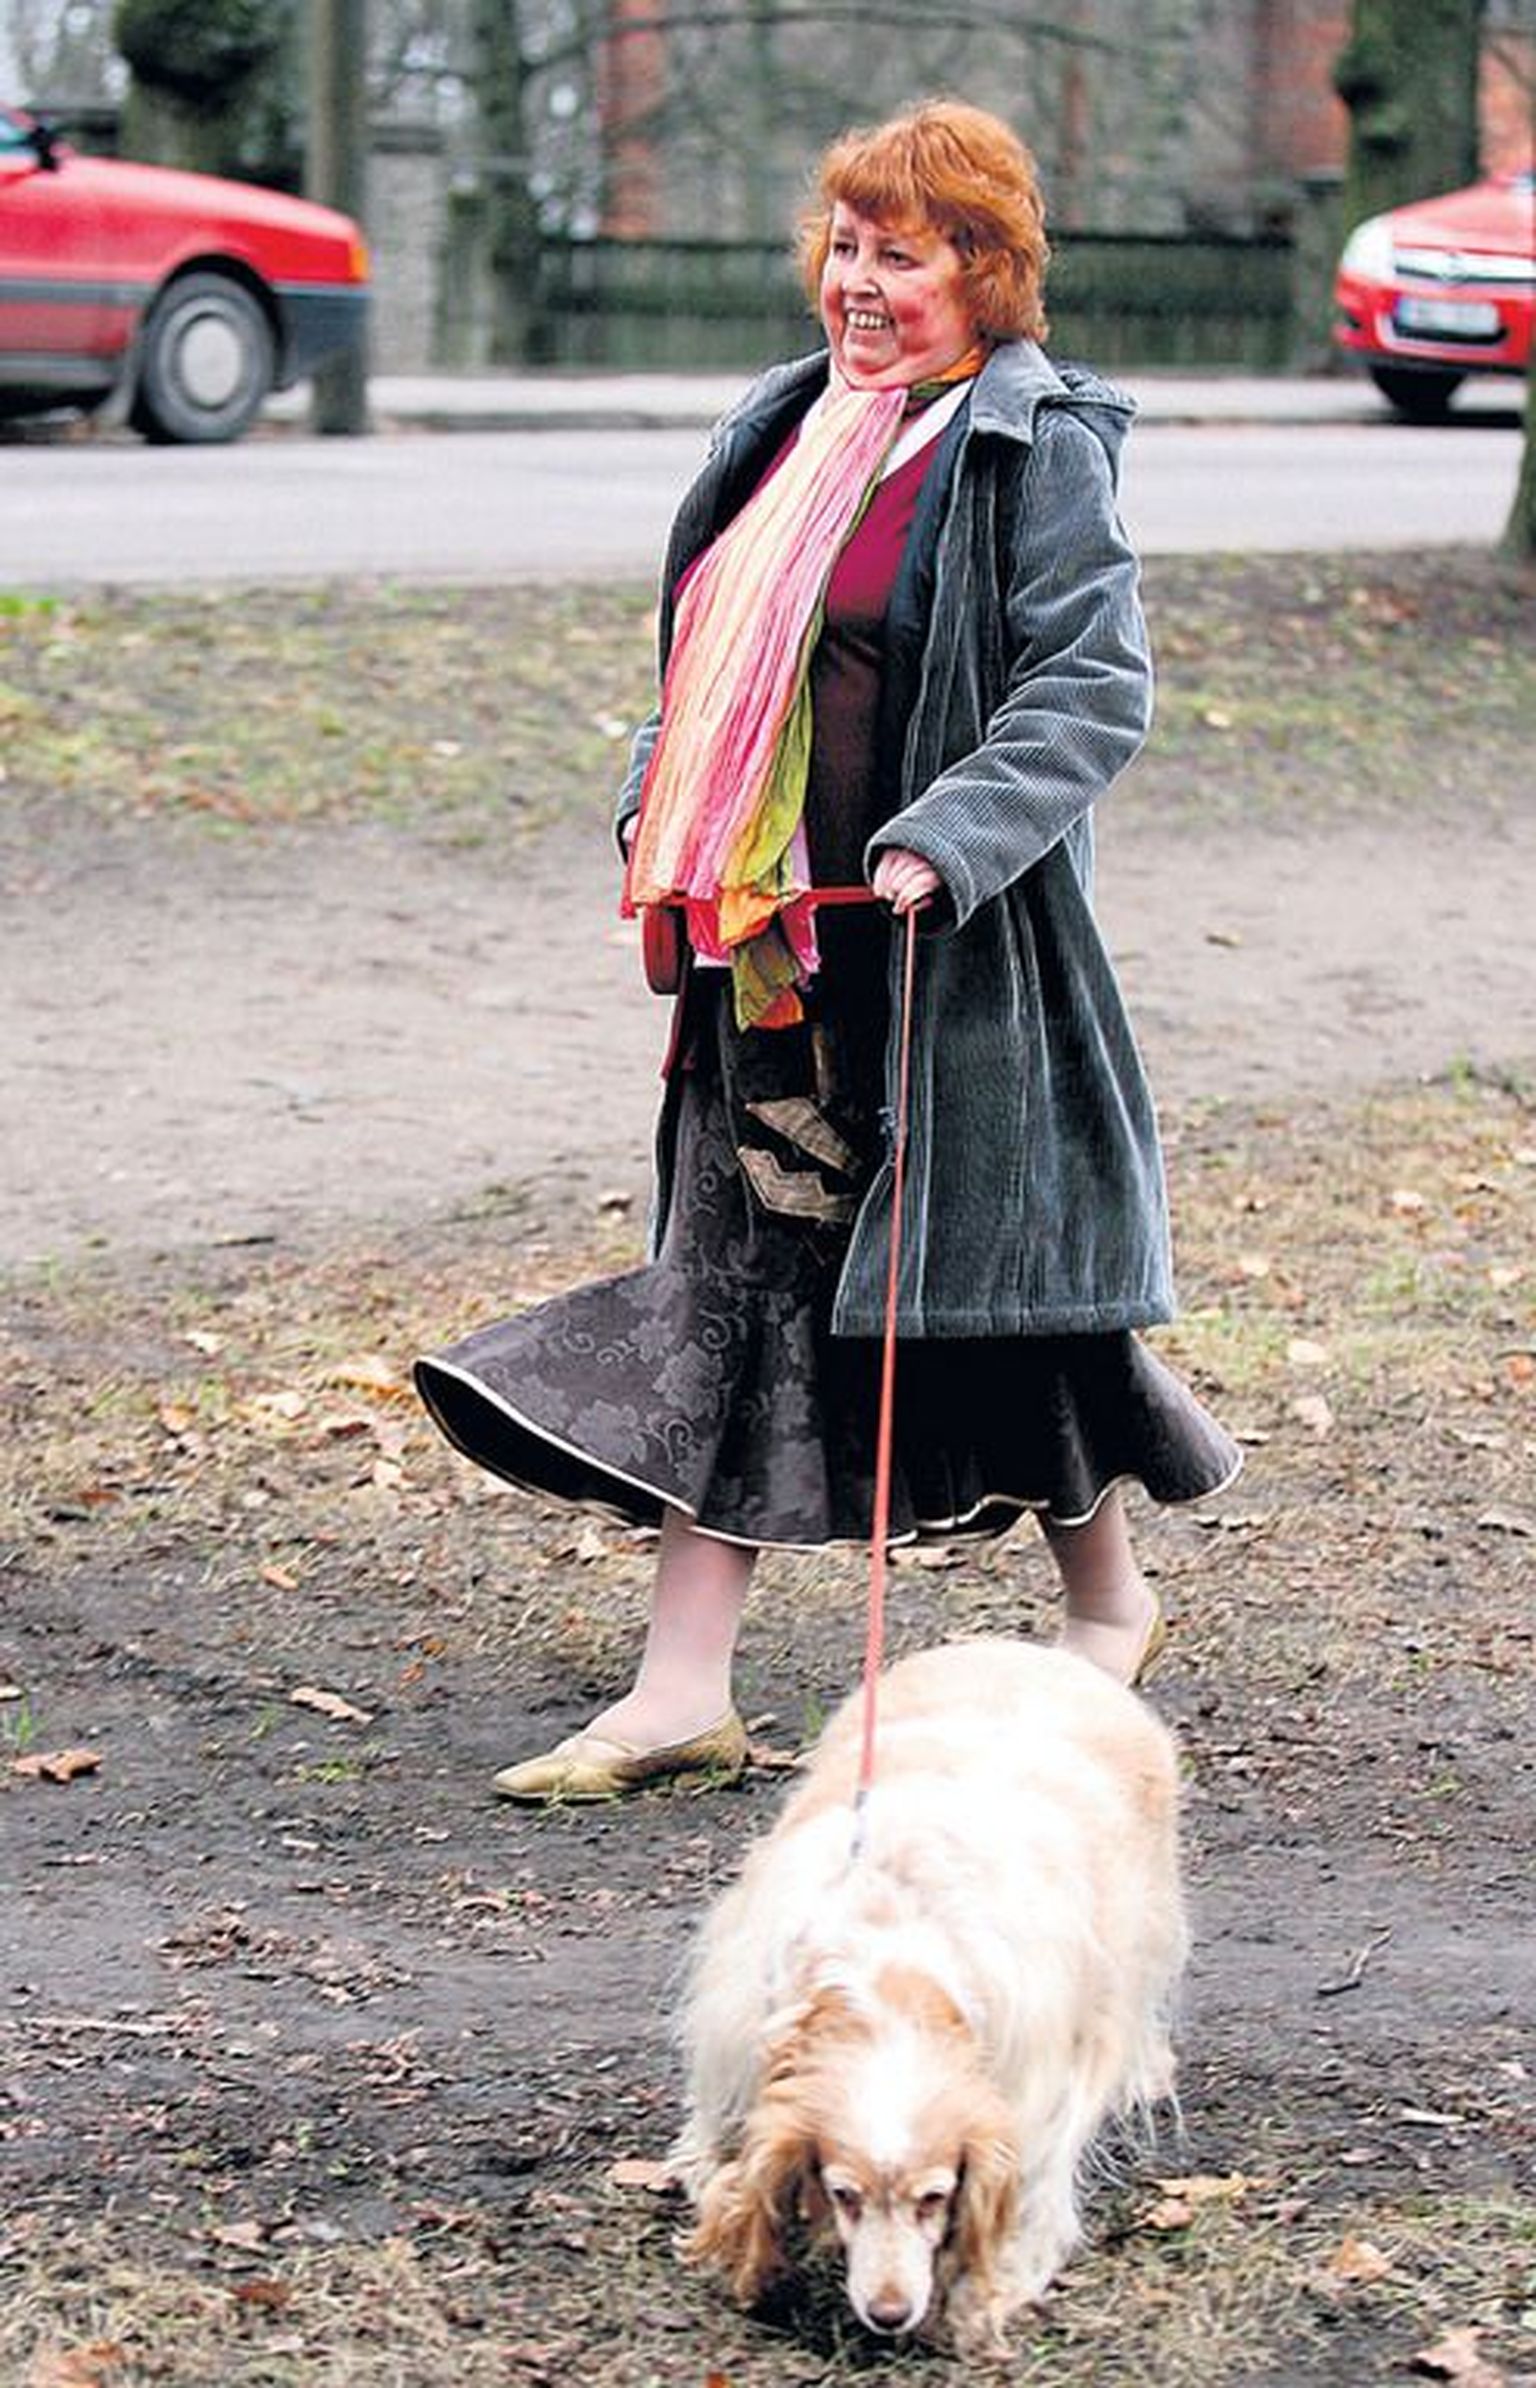 Siiratud neeruga Riina Gailit jalutab koera, kellest on saanud talle pärast operatsiooni elus oluline partner.